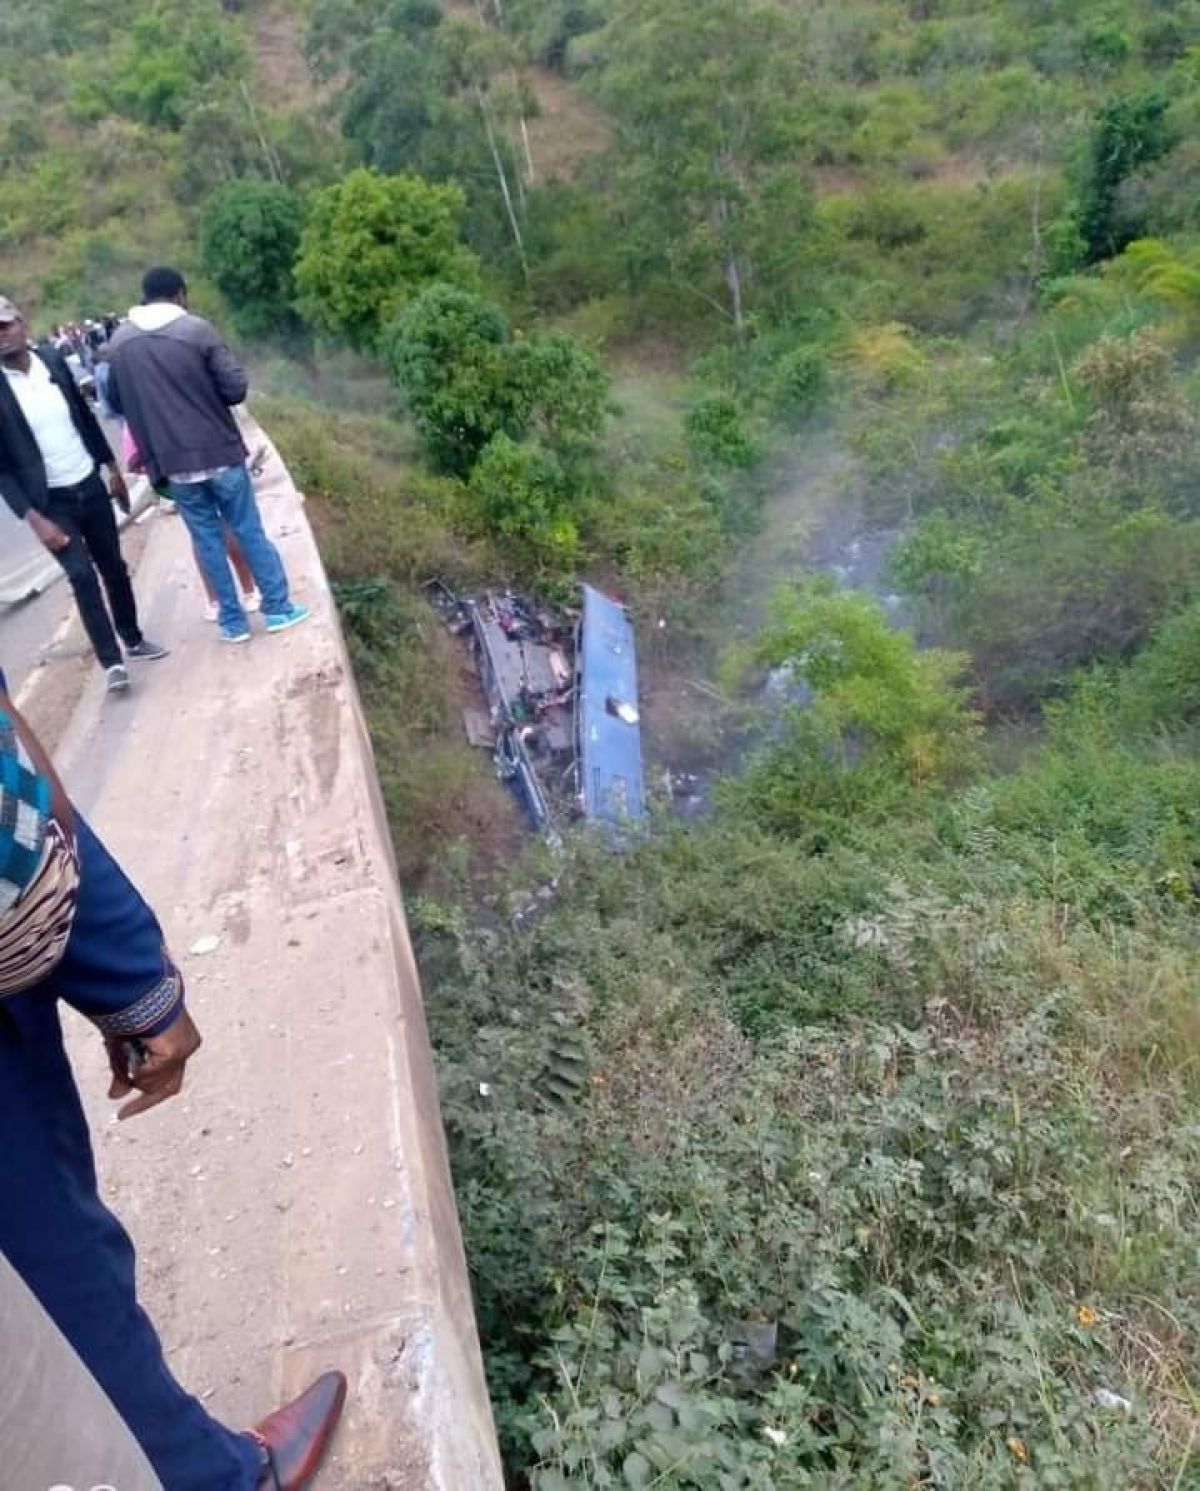 Kenya’da yolcu otobüsü nehre düştü: 24 ölü #2